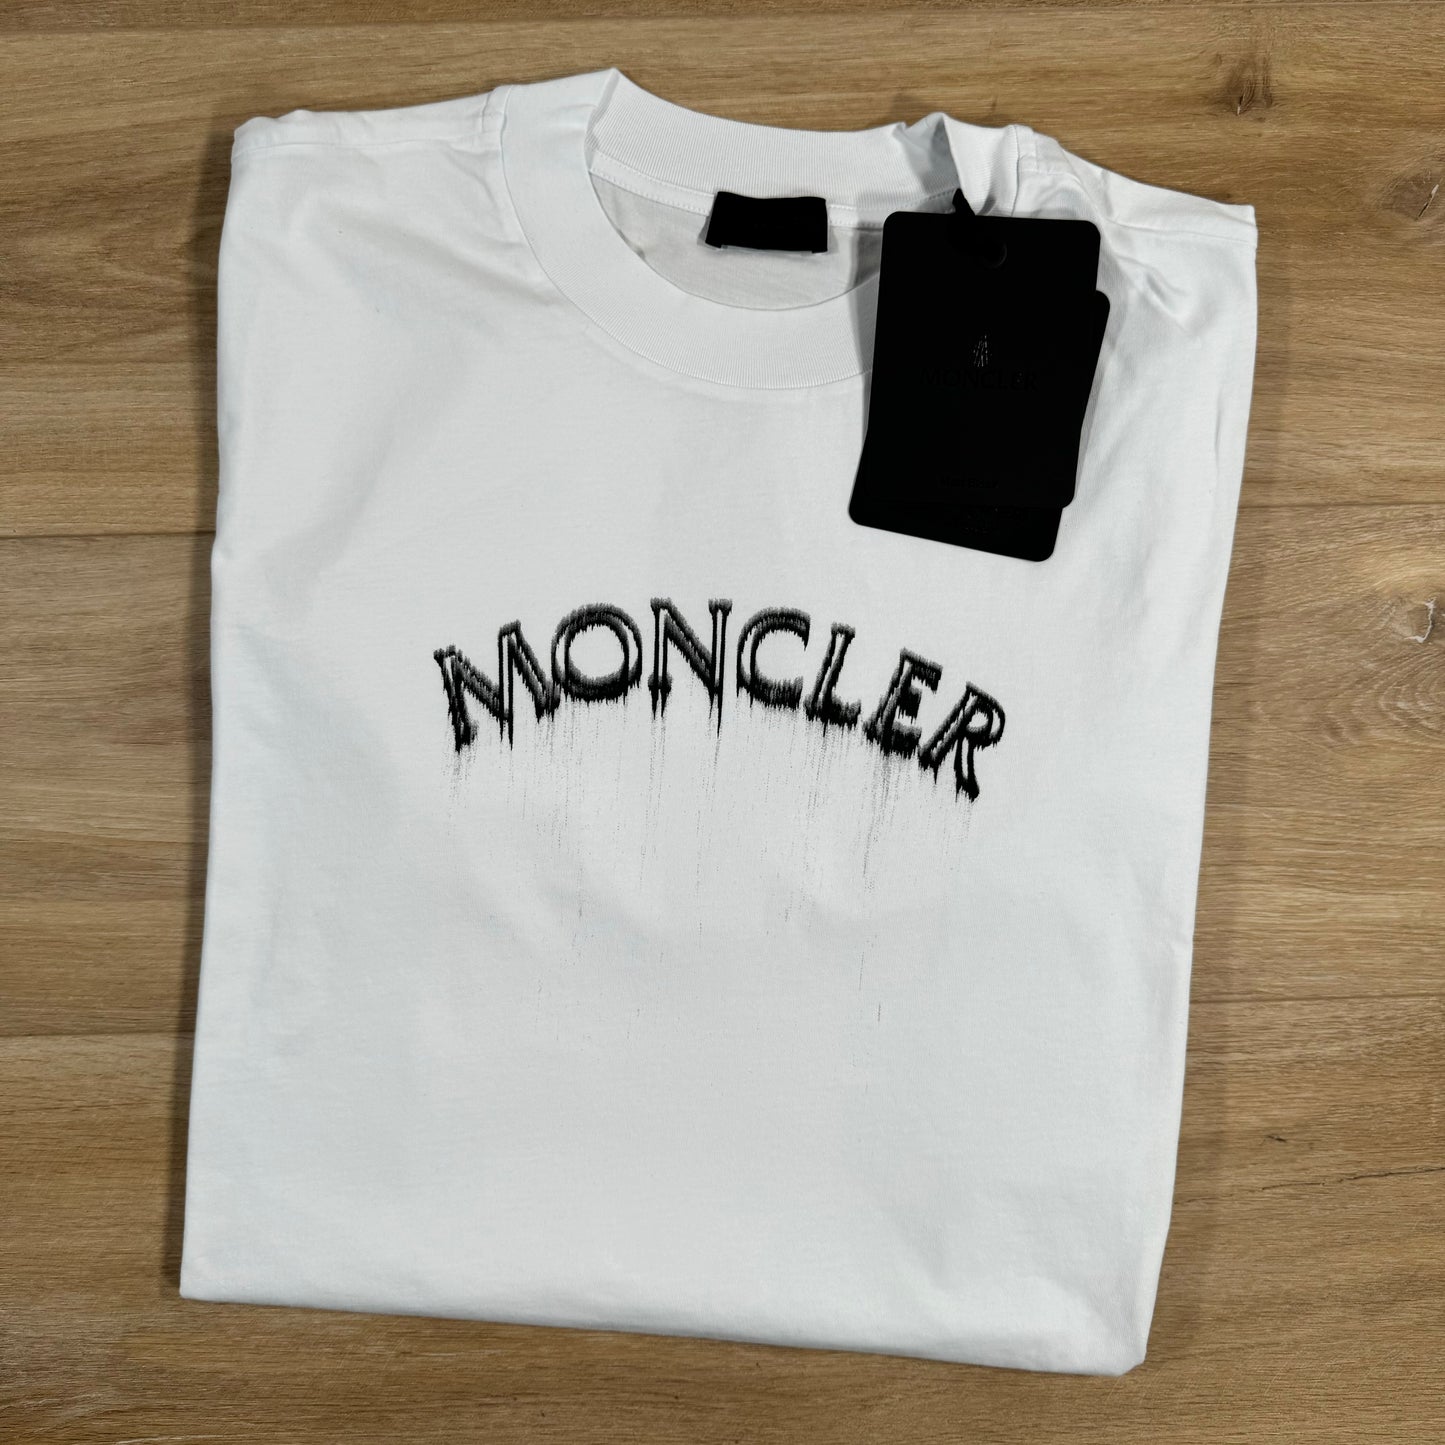 Moncler Optical Logo T-Shirt in White